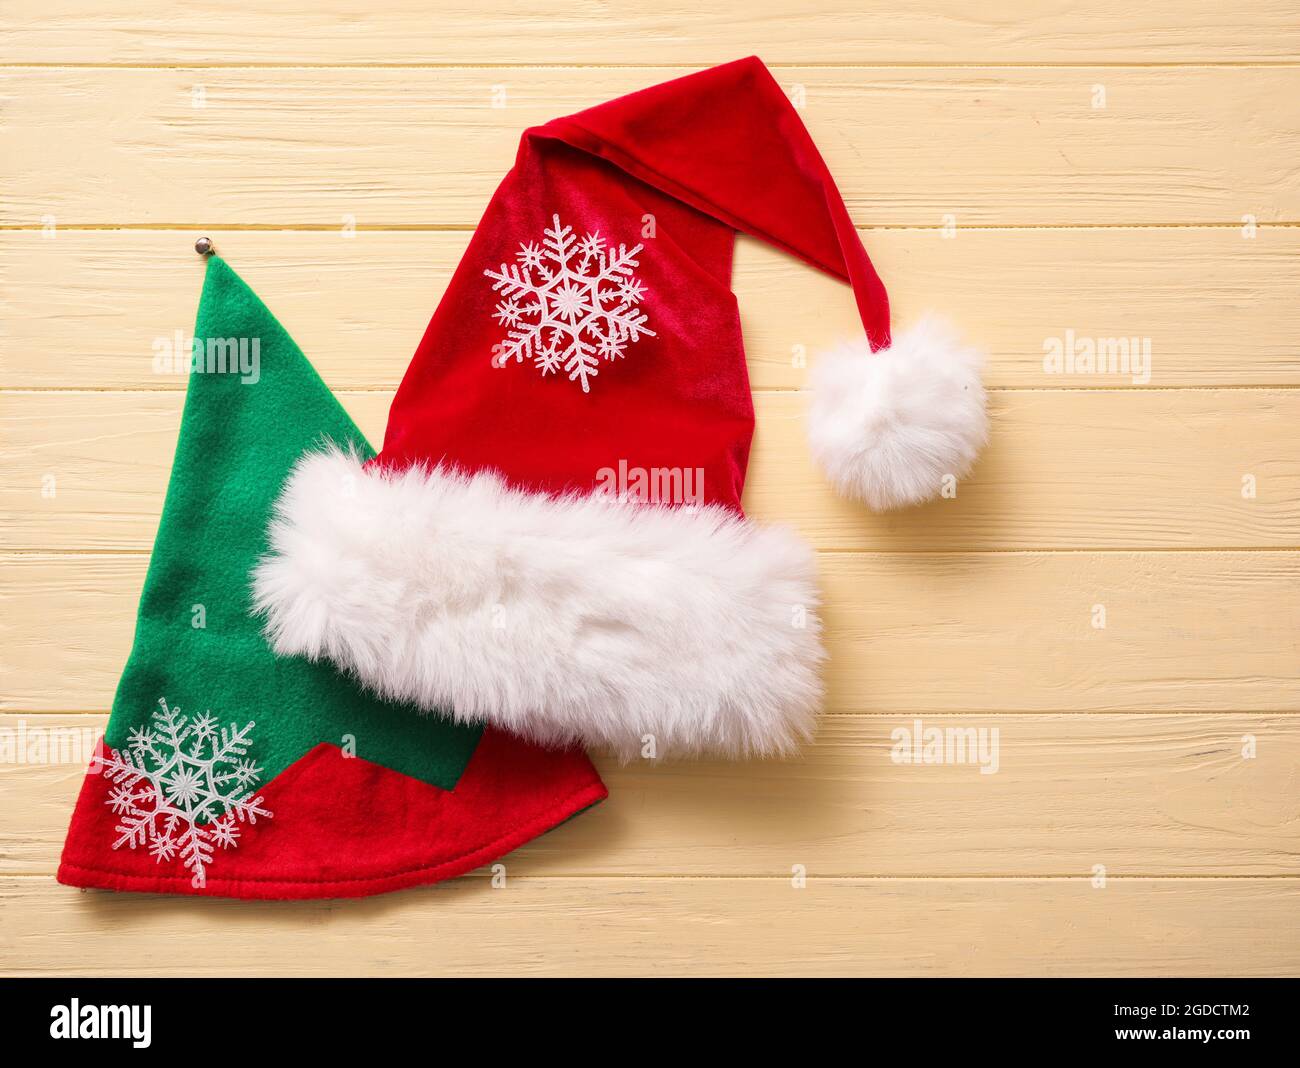 Cappelli di elfo immagini e fotografie stock ad alta risoluzione - Alamy